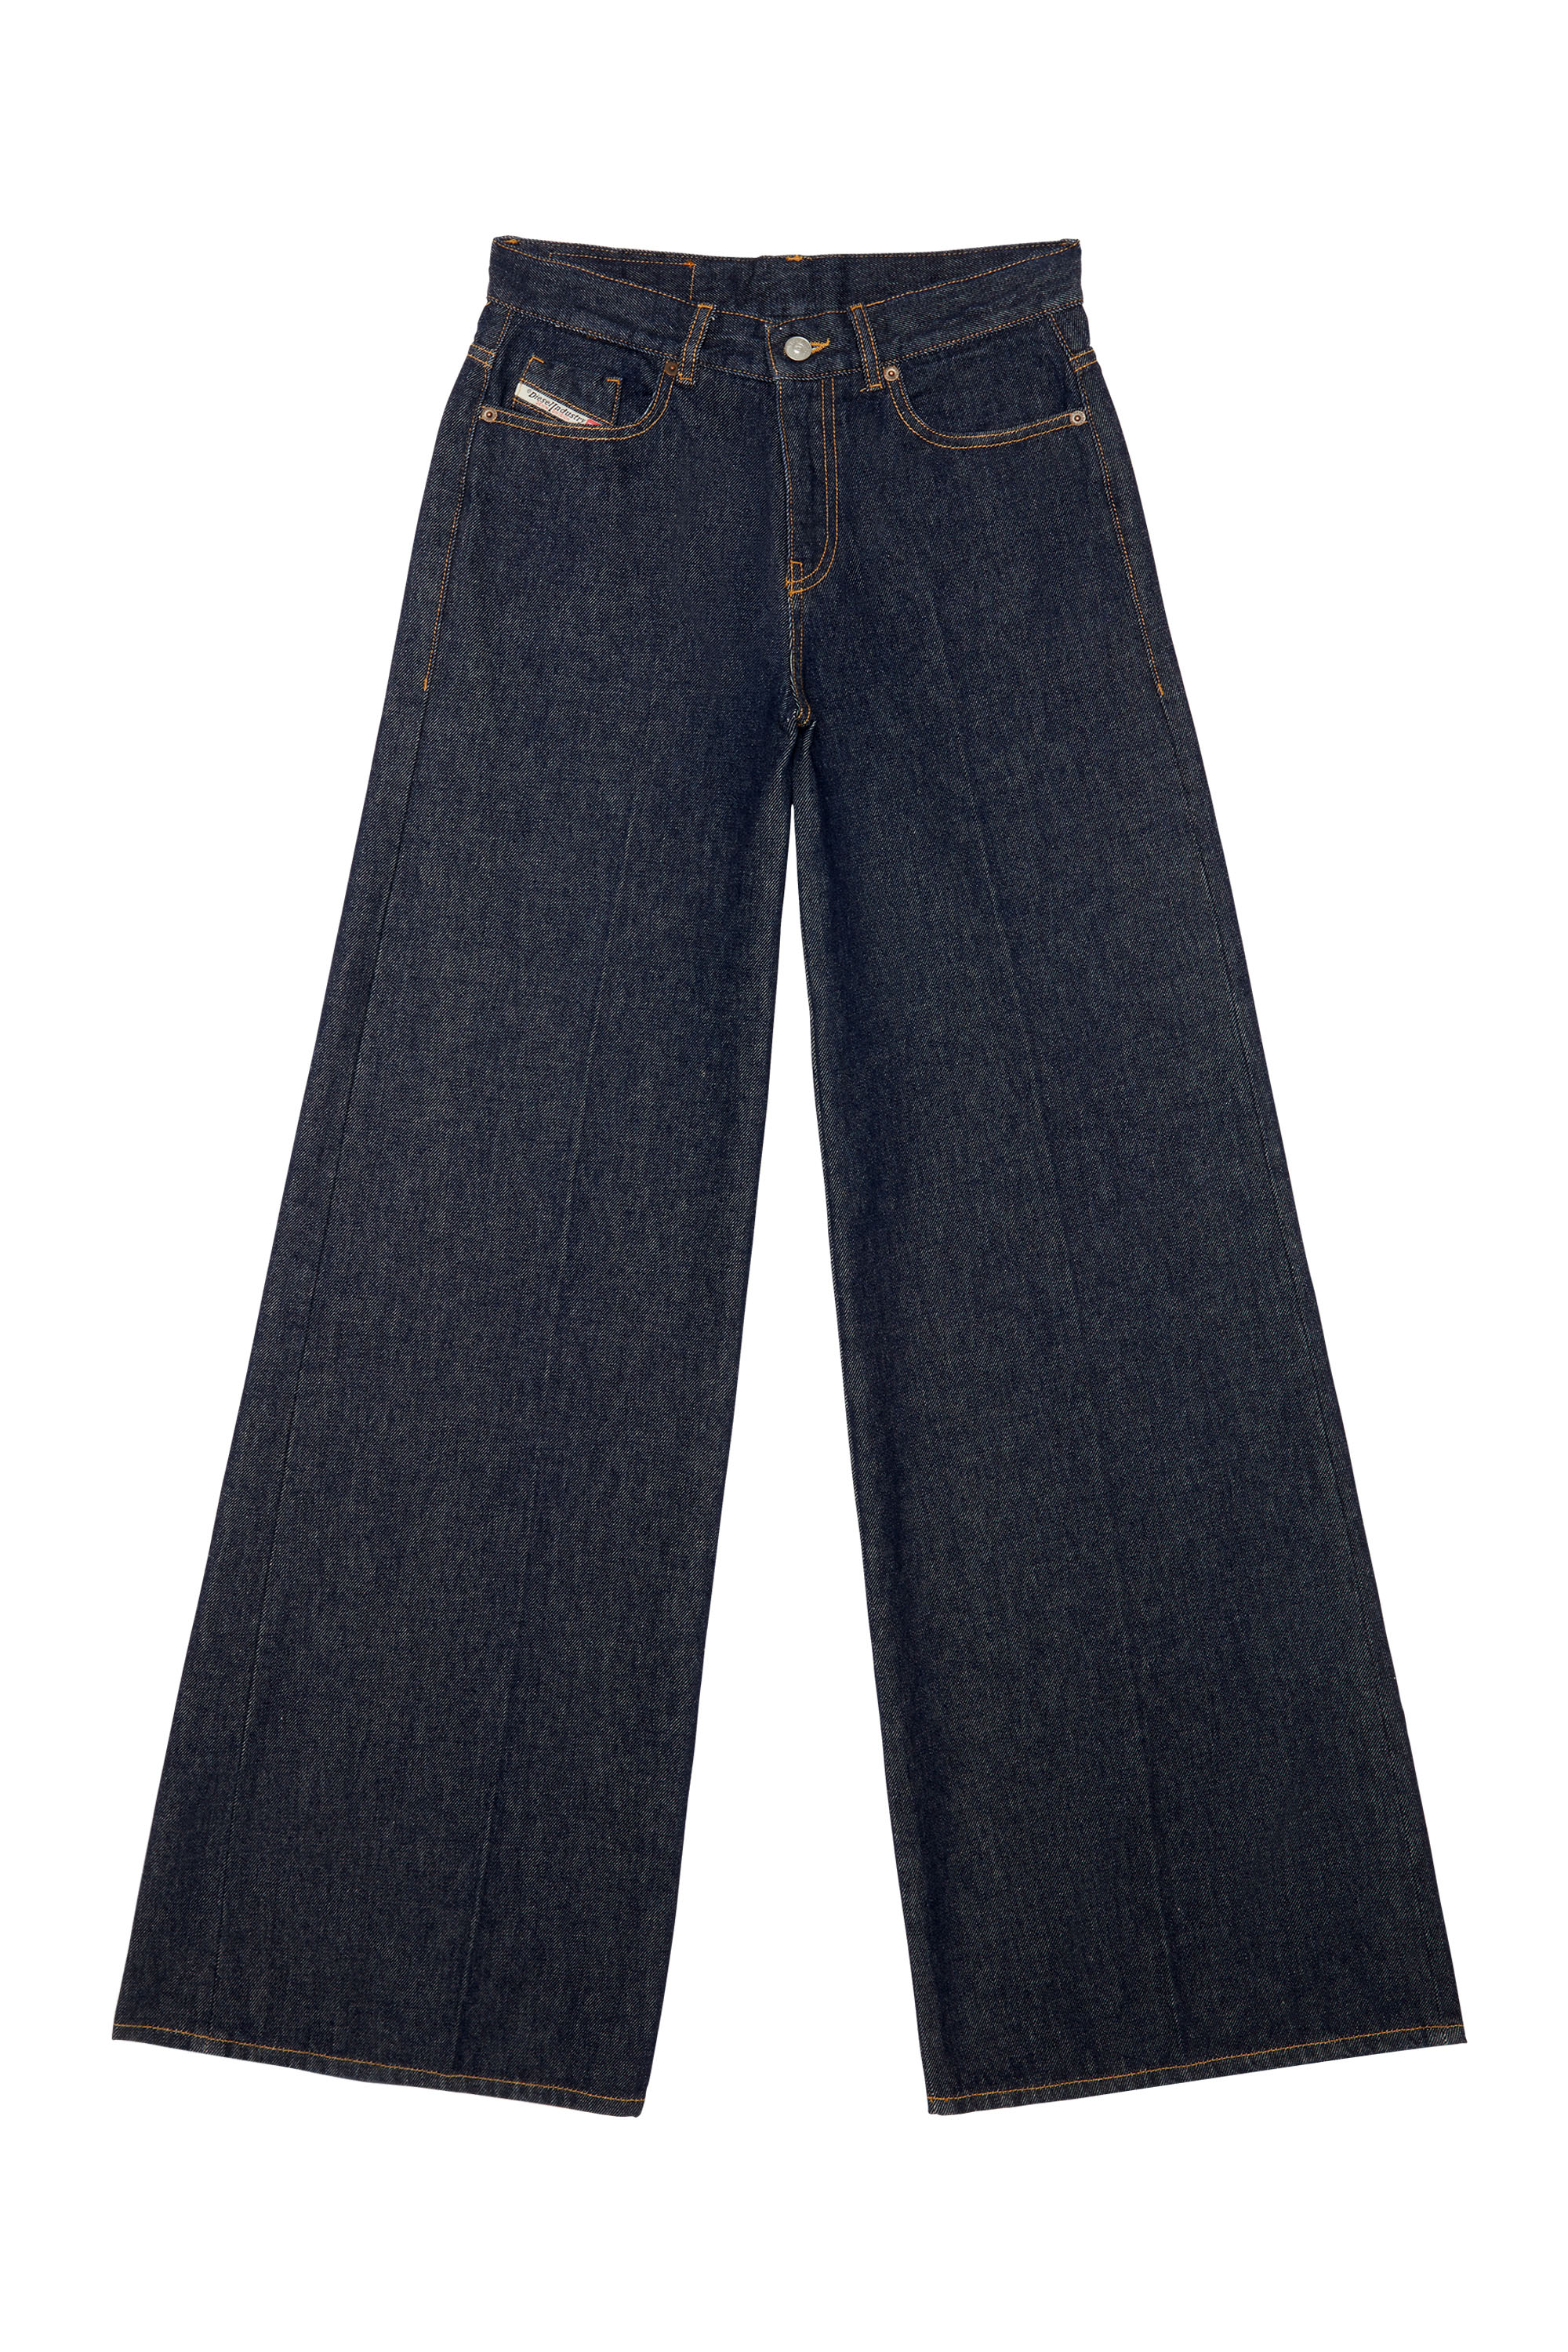 1978 Z9C02 Bootcut and Flare Jeans, Bleu Foncé - Jeans